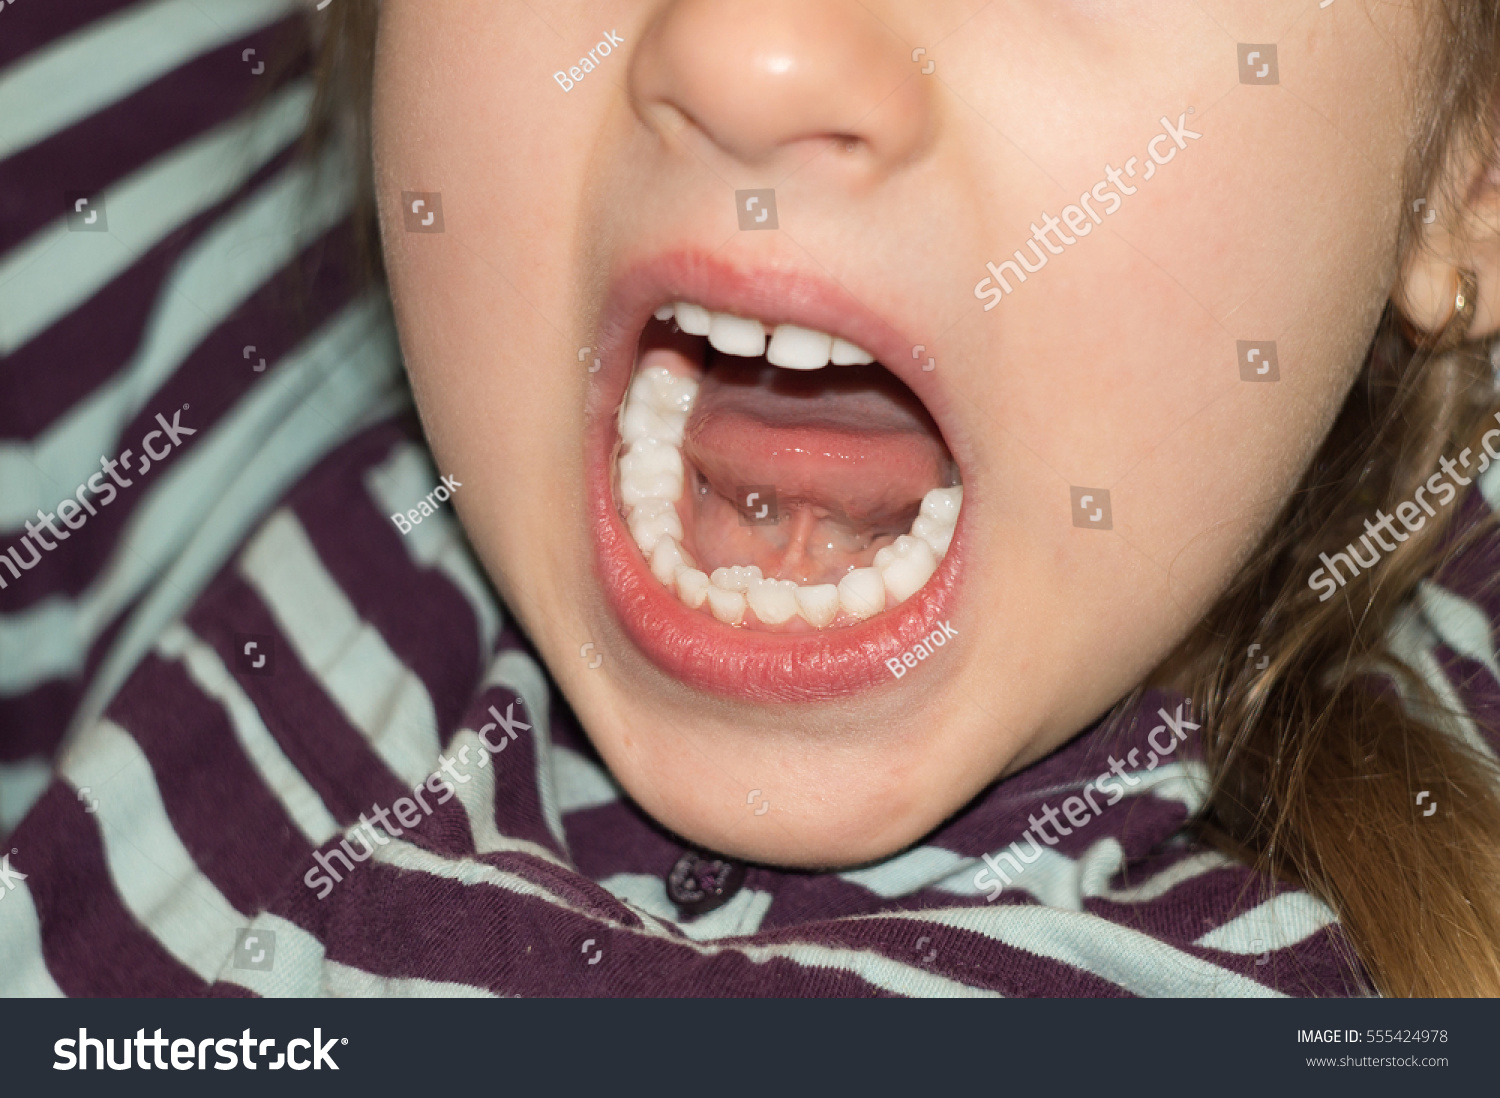 Акульи зубы у девочки фото